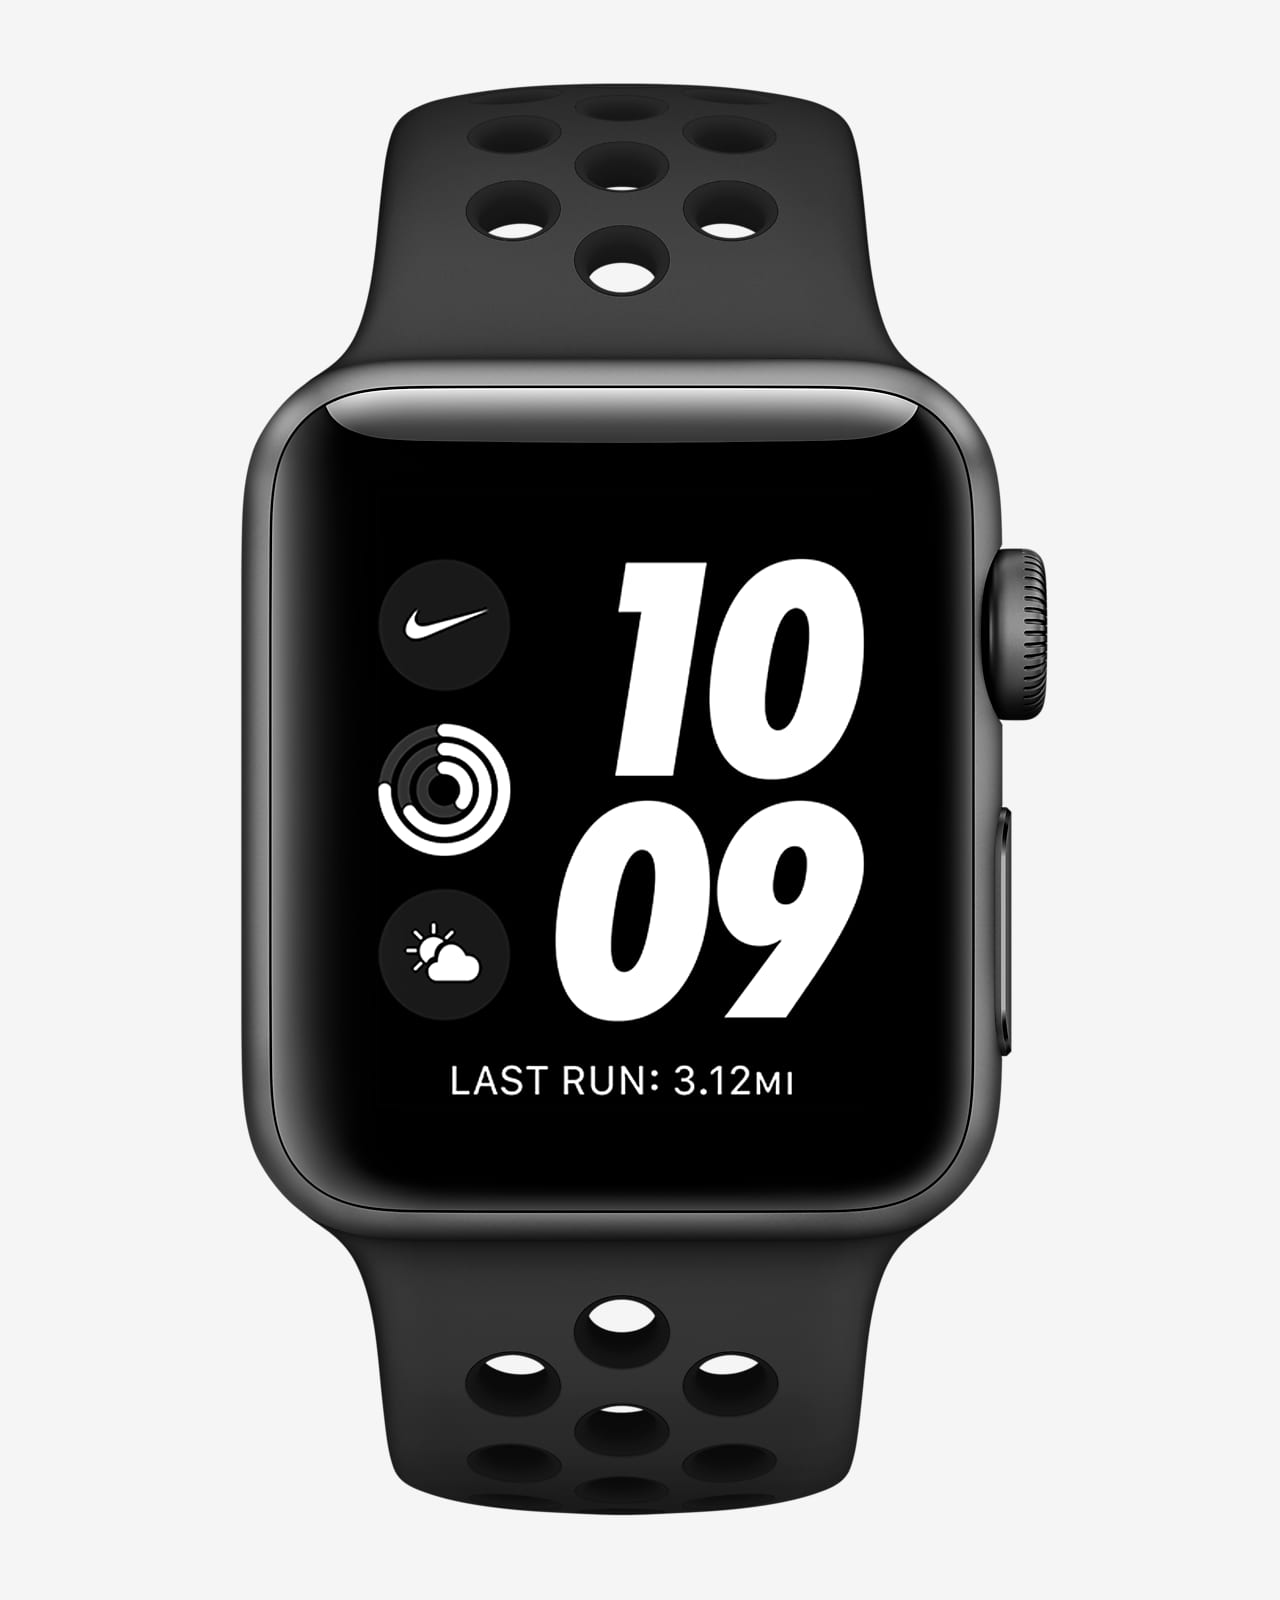 9142円 代引き手数料無料 Apple Watch Series 3 42mm GPSモデル ナイキモデル